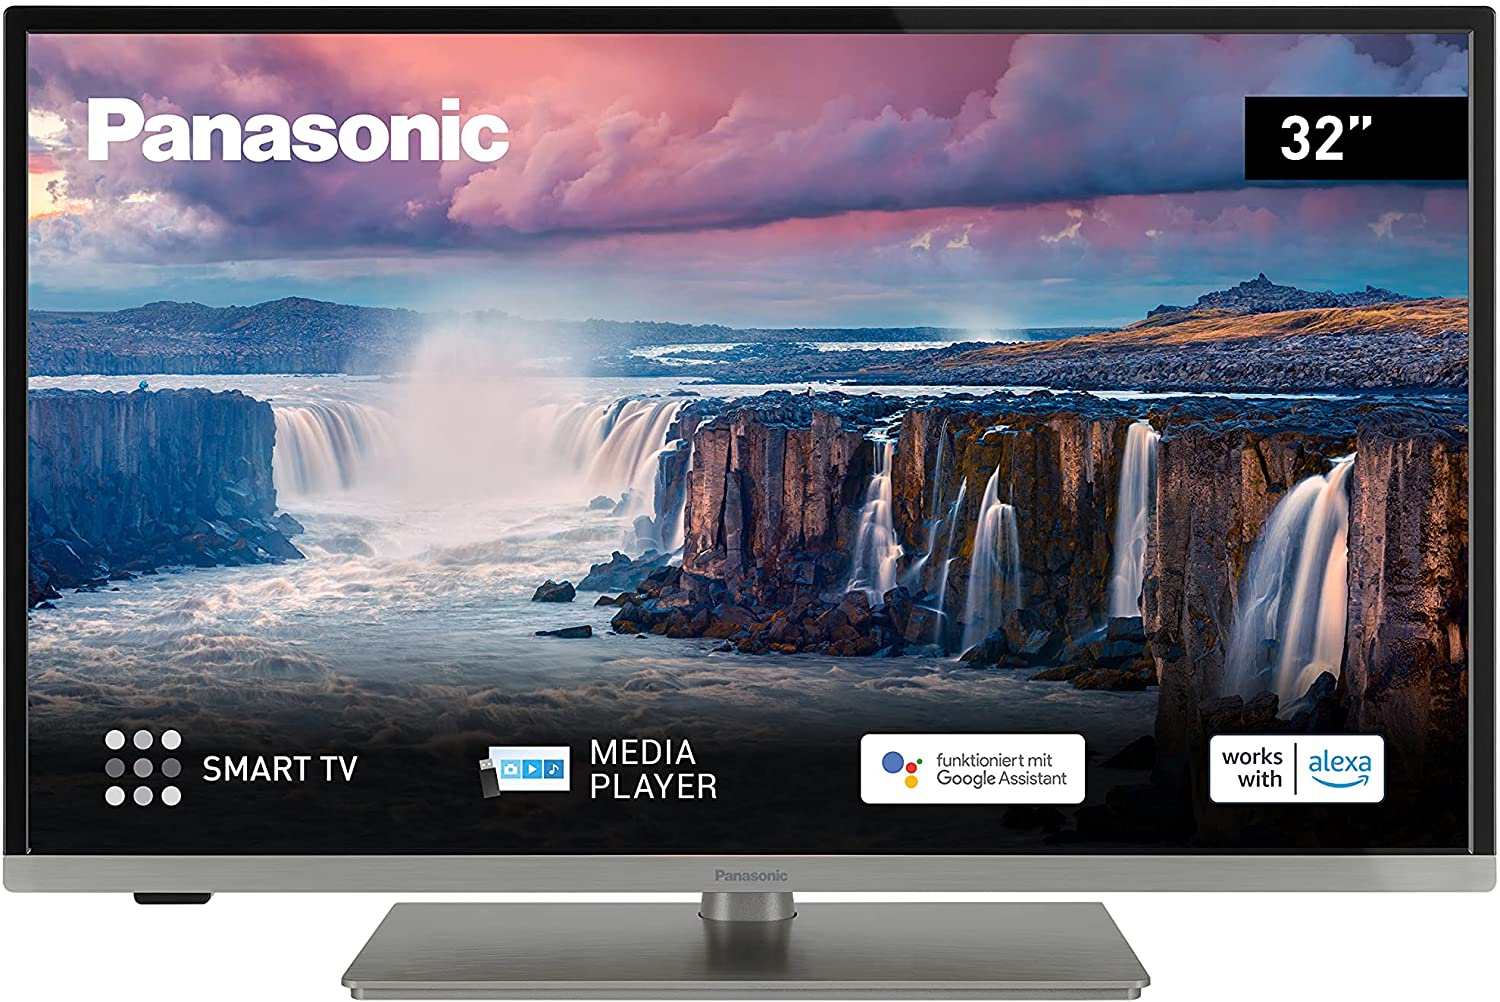 Smart TV Panasonic reset